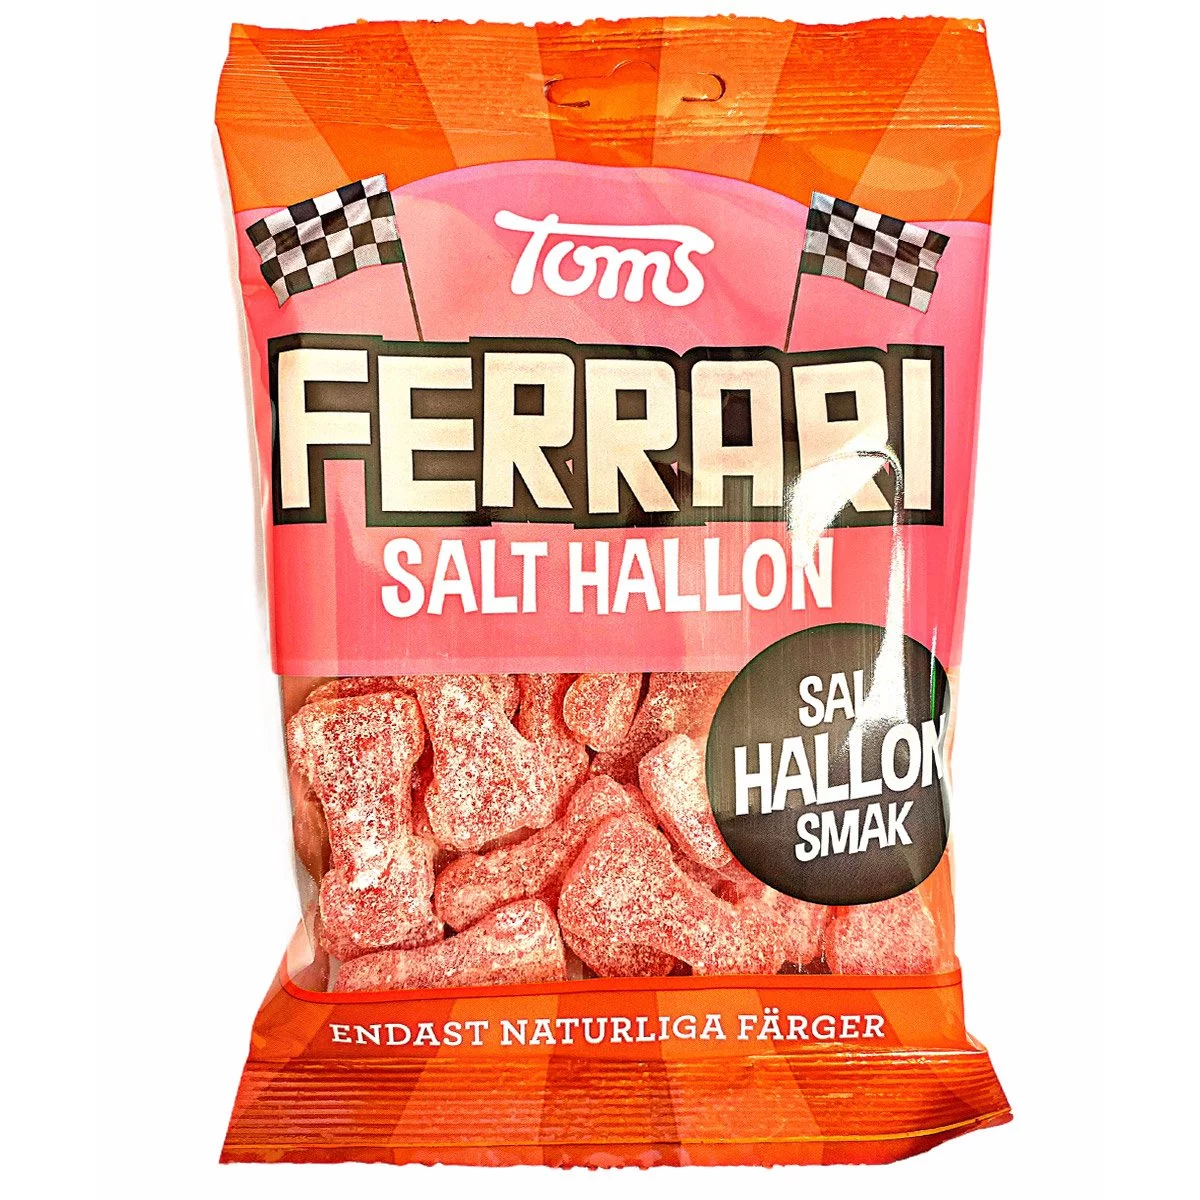 Toms Ferrari Salt Hallon (120g) 1